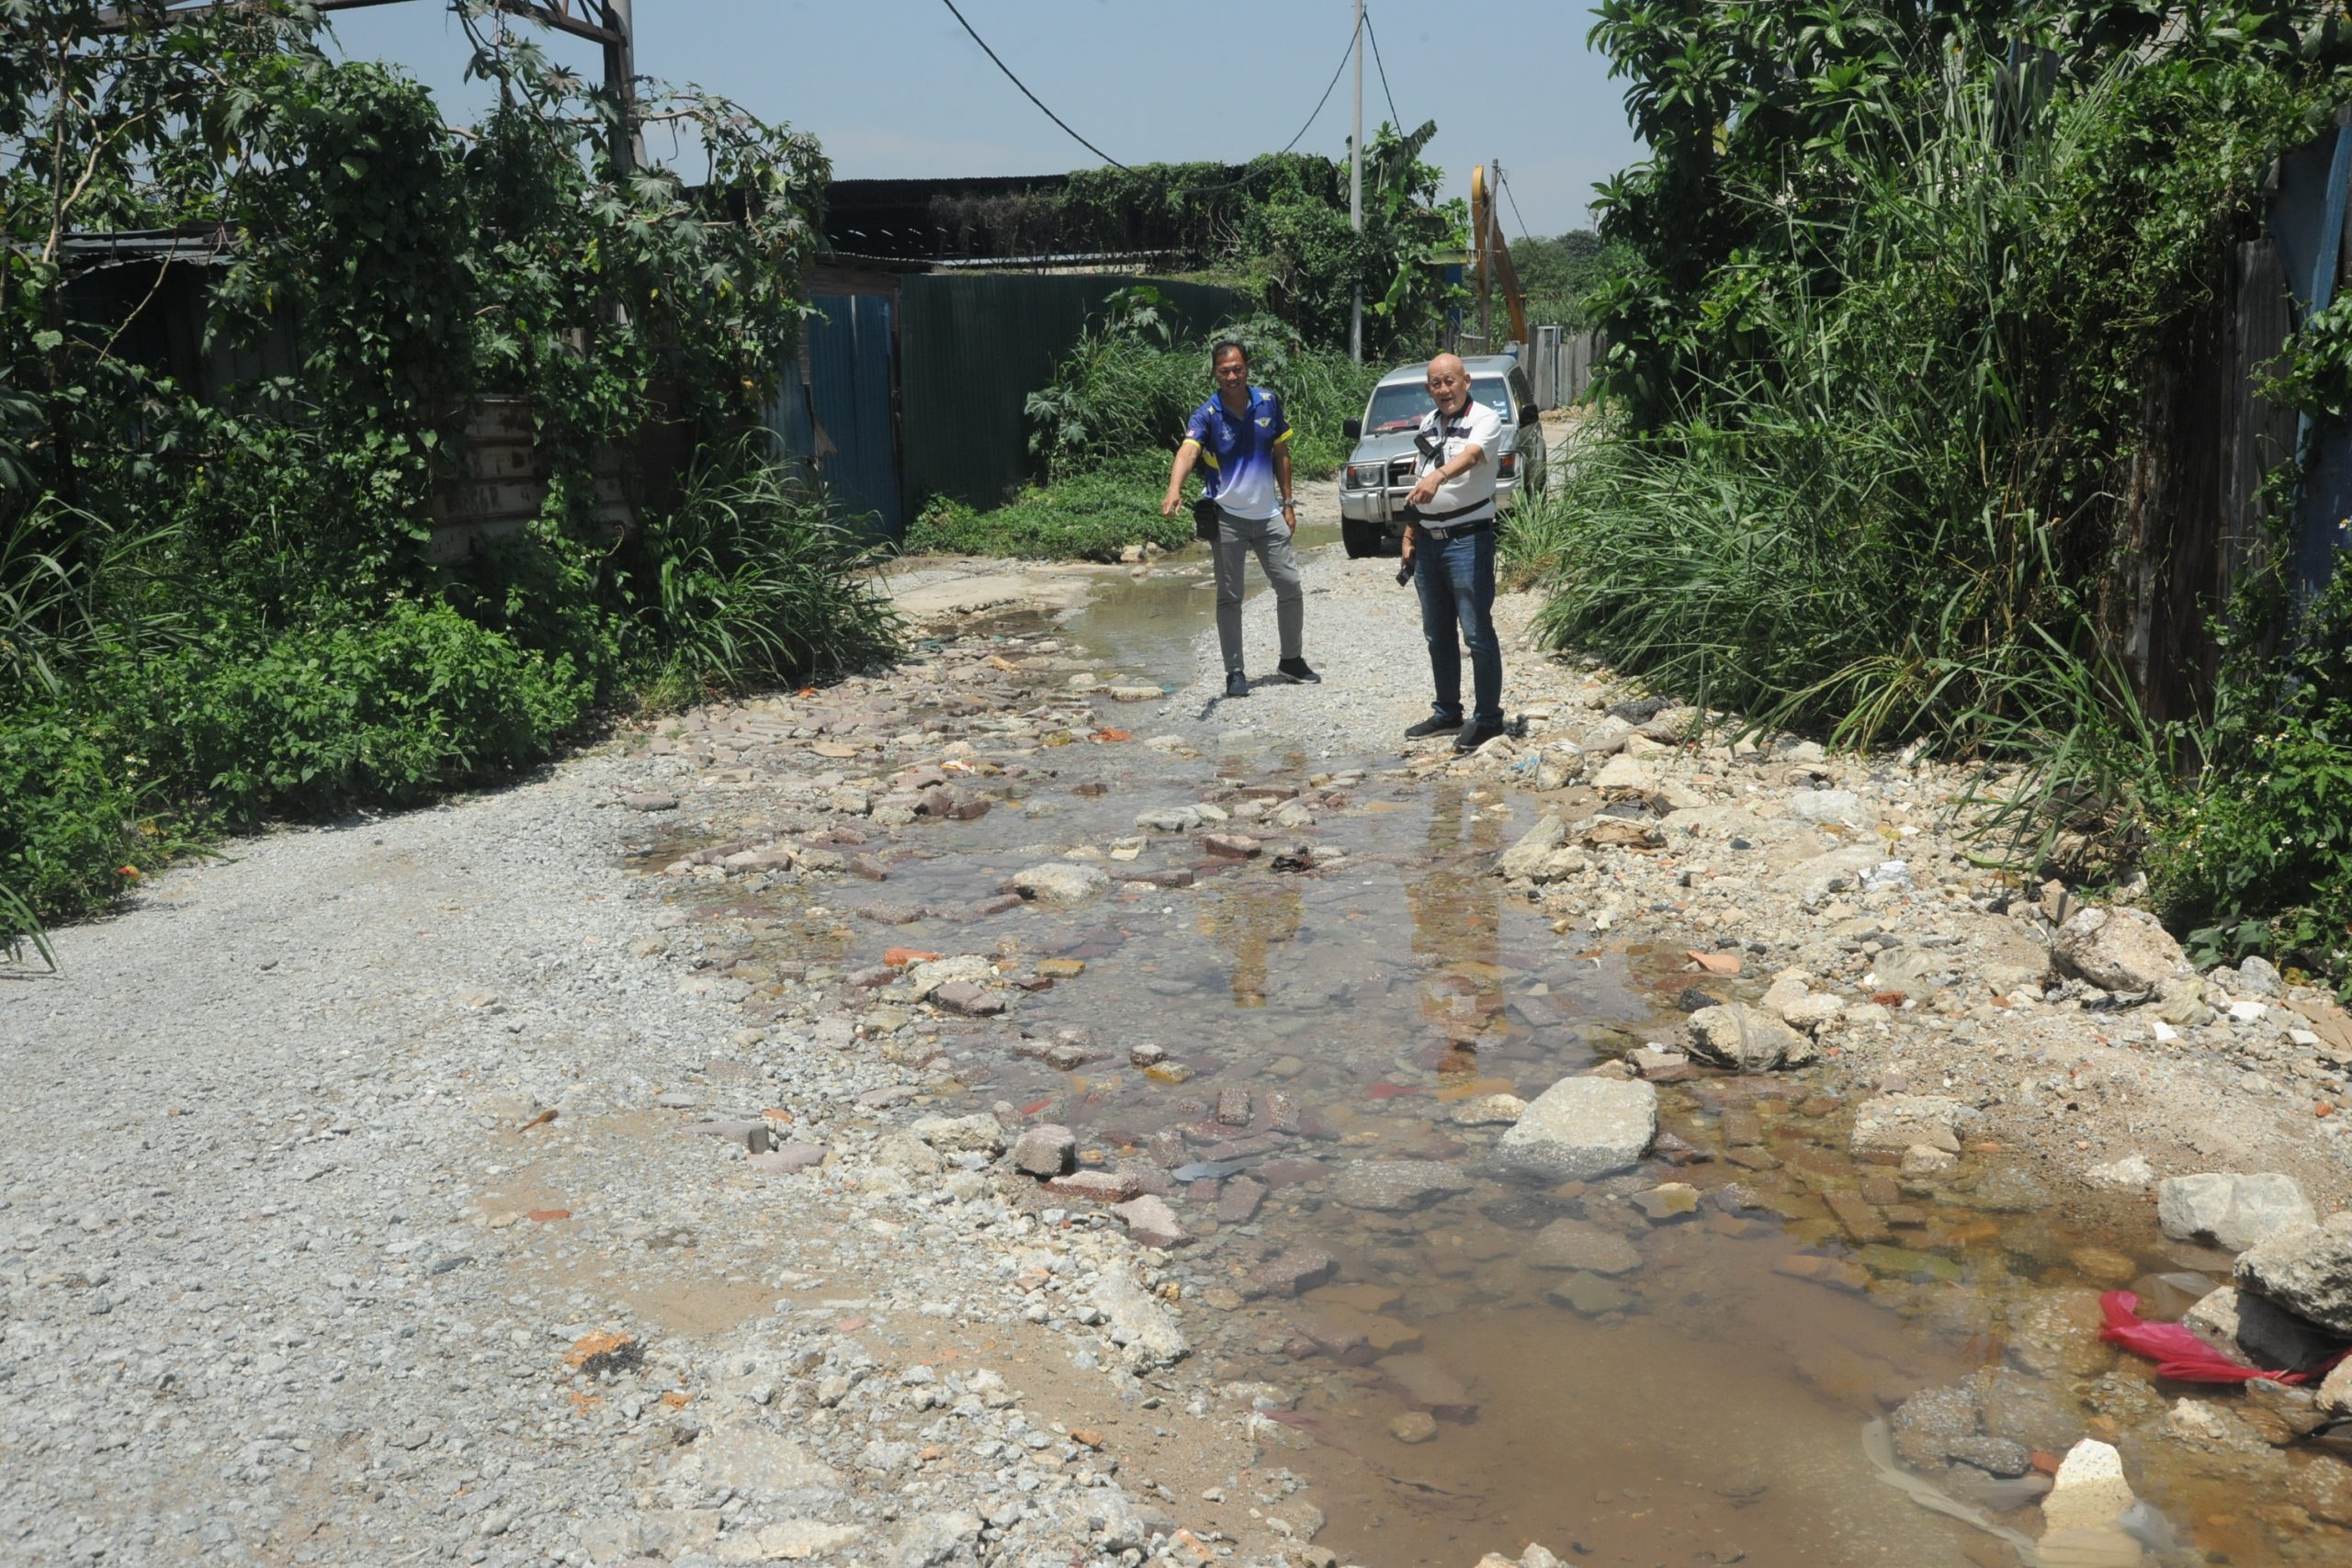 双溪毛糯太平村11哩工业区 河流侵蚀道路破损不堪